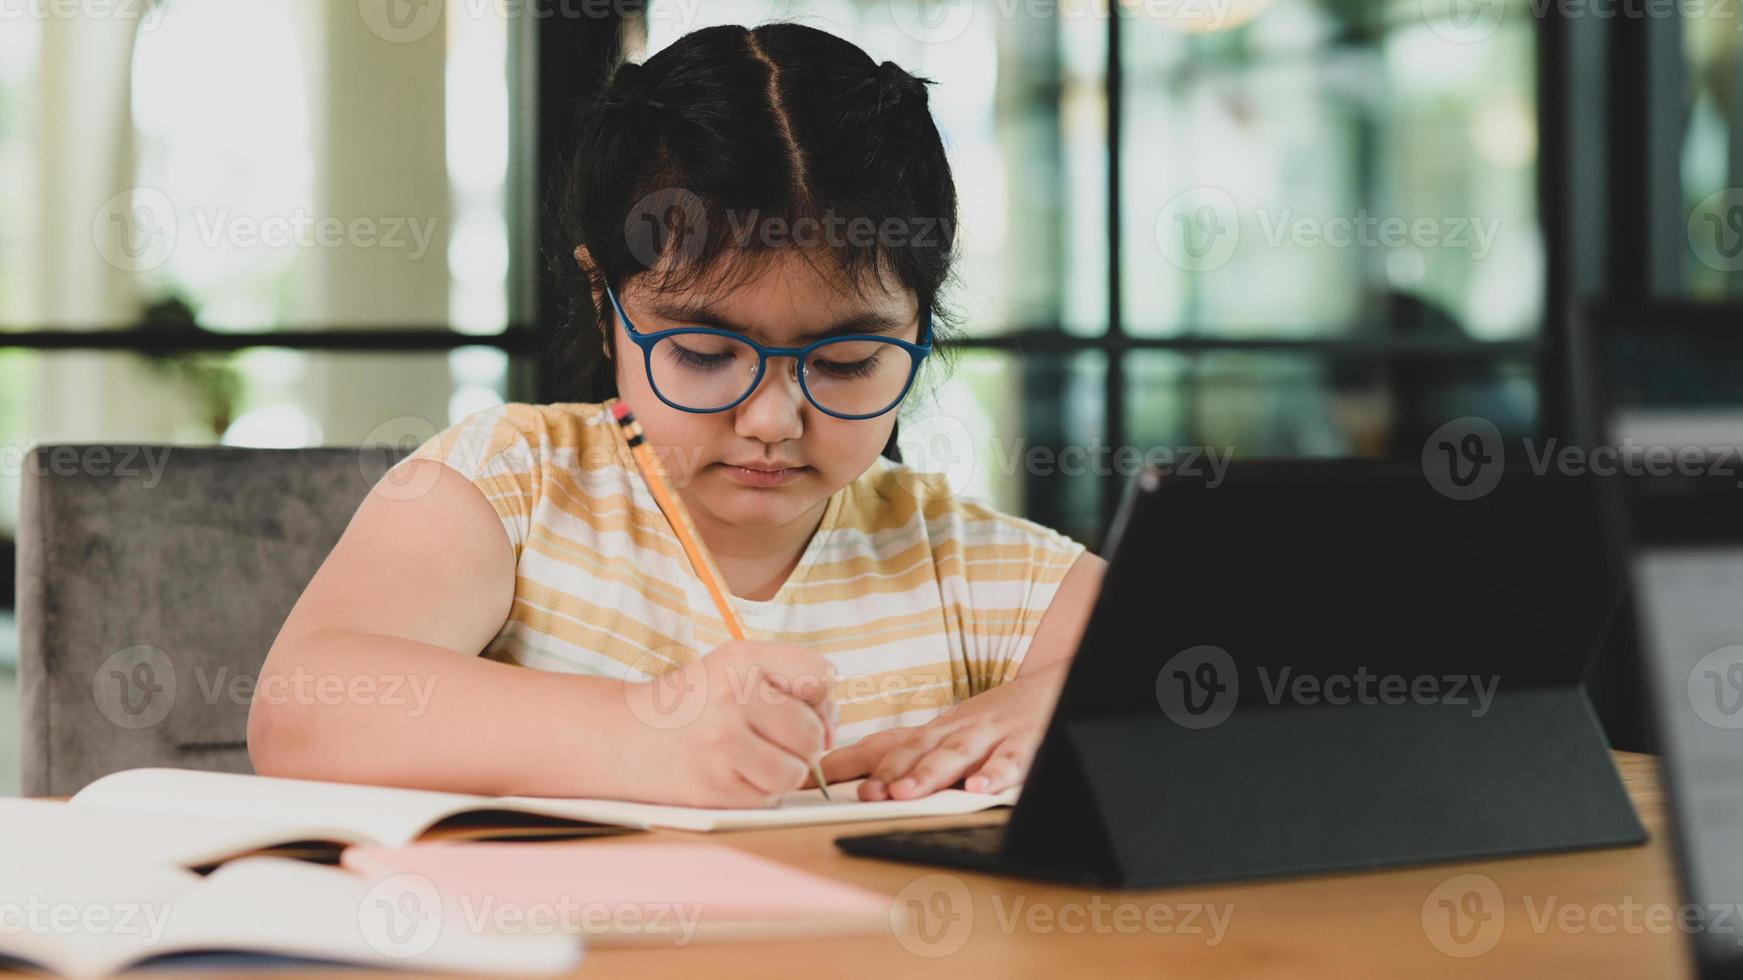 asiatisches Kindermädchen mit Brille, das ihre Hausaufgaben in einem Notizbuch macht. foto